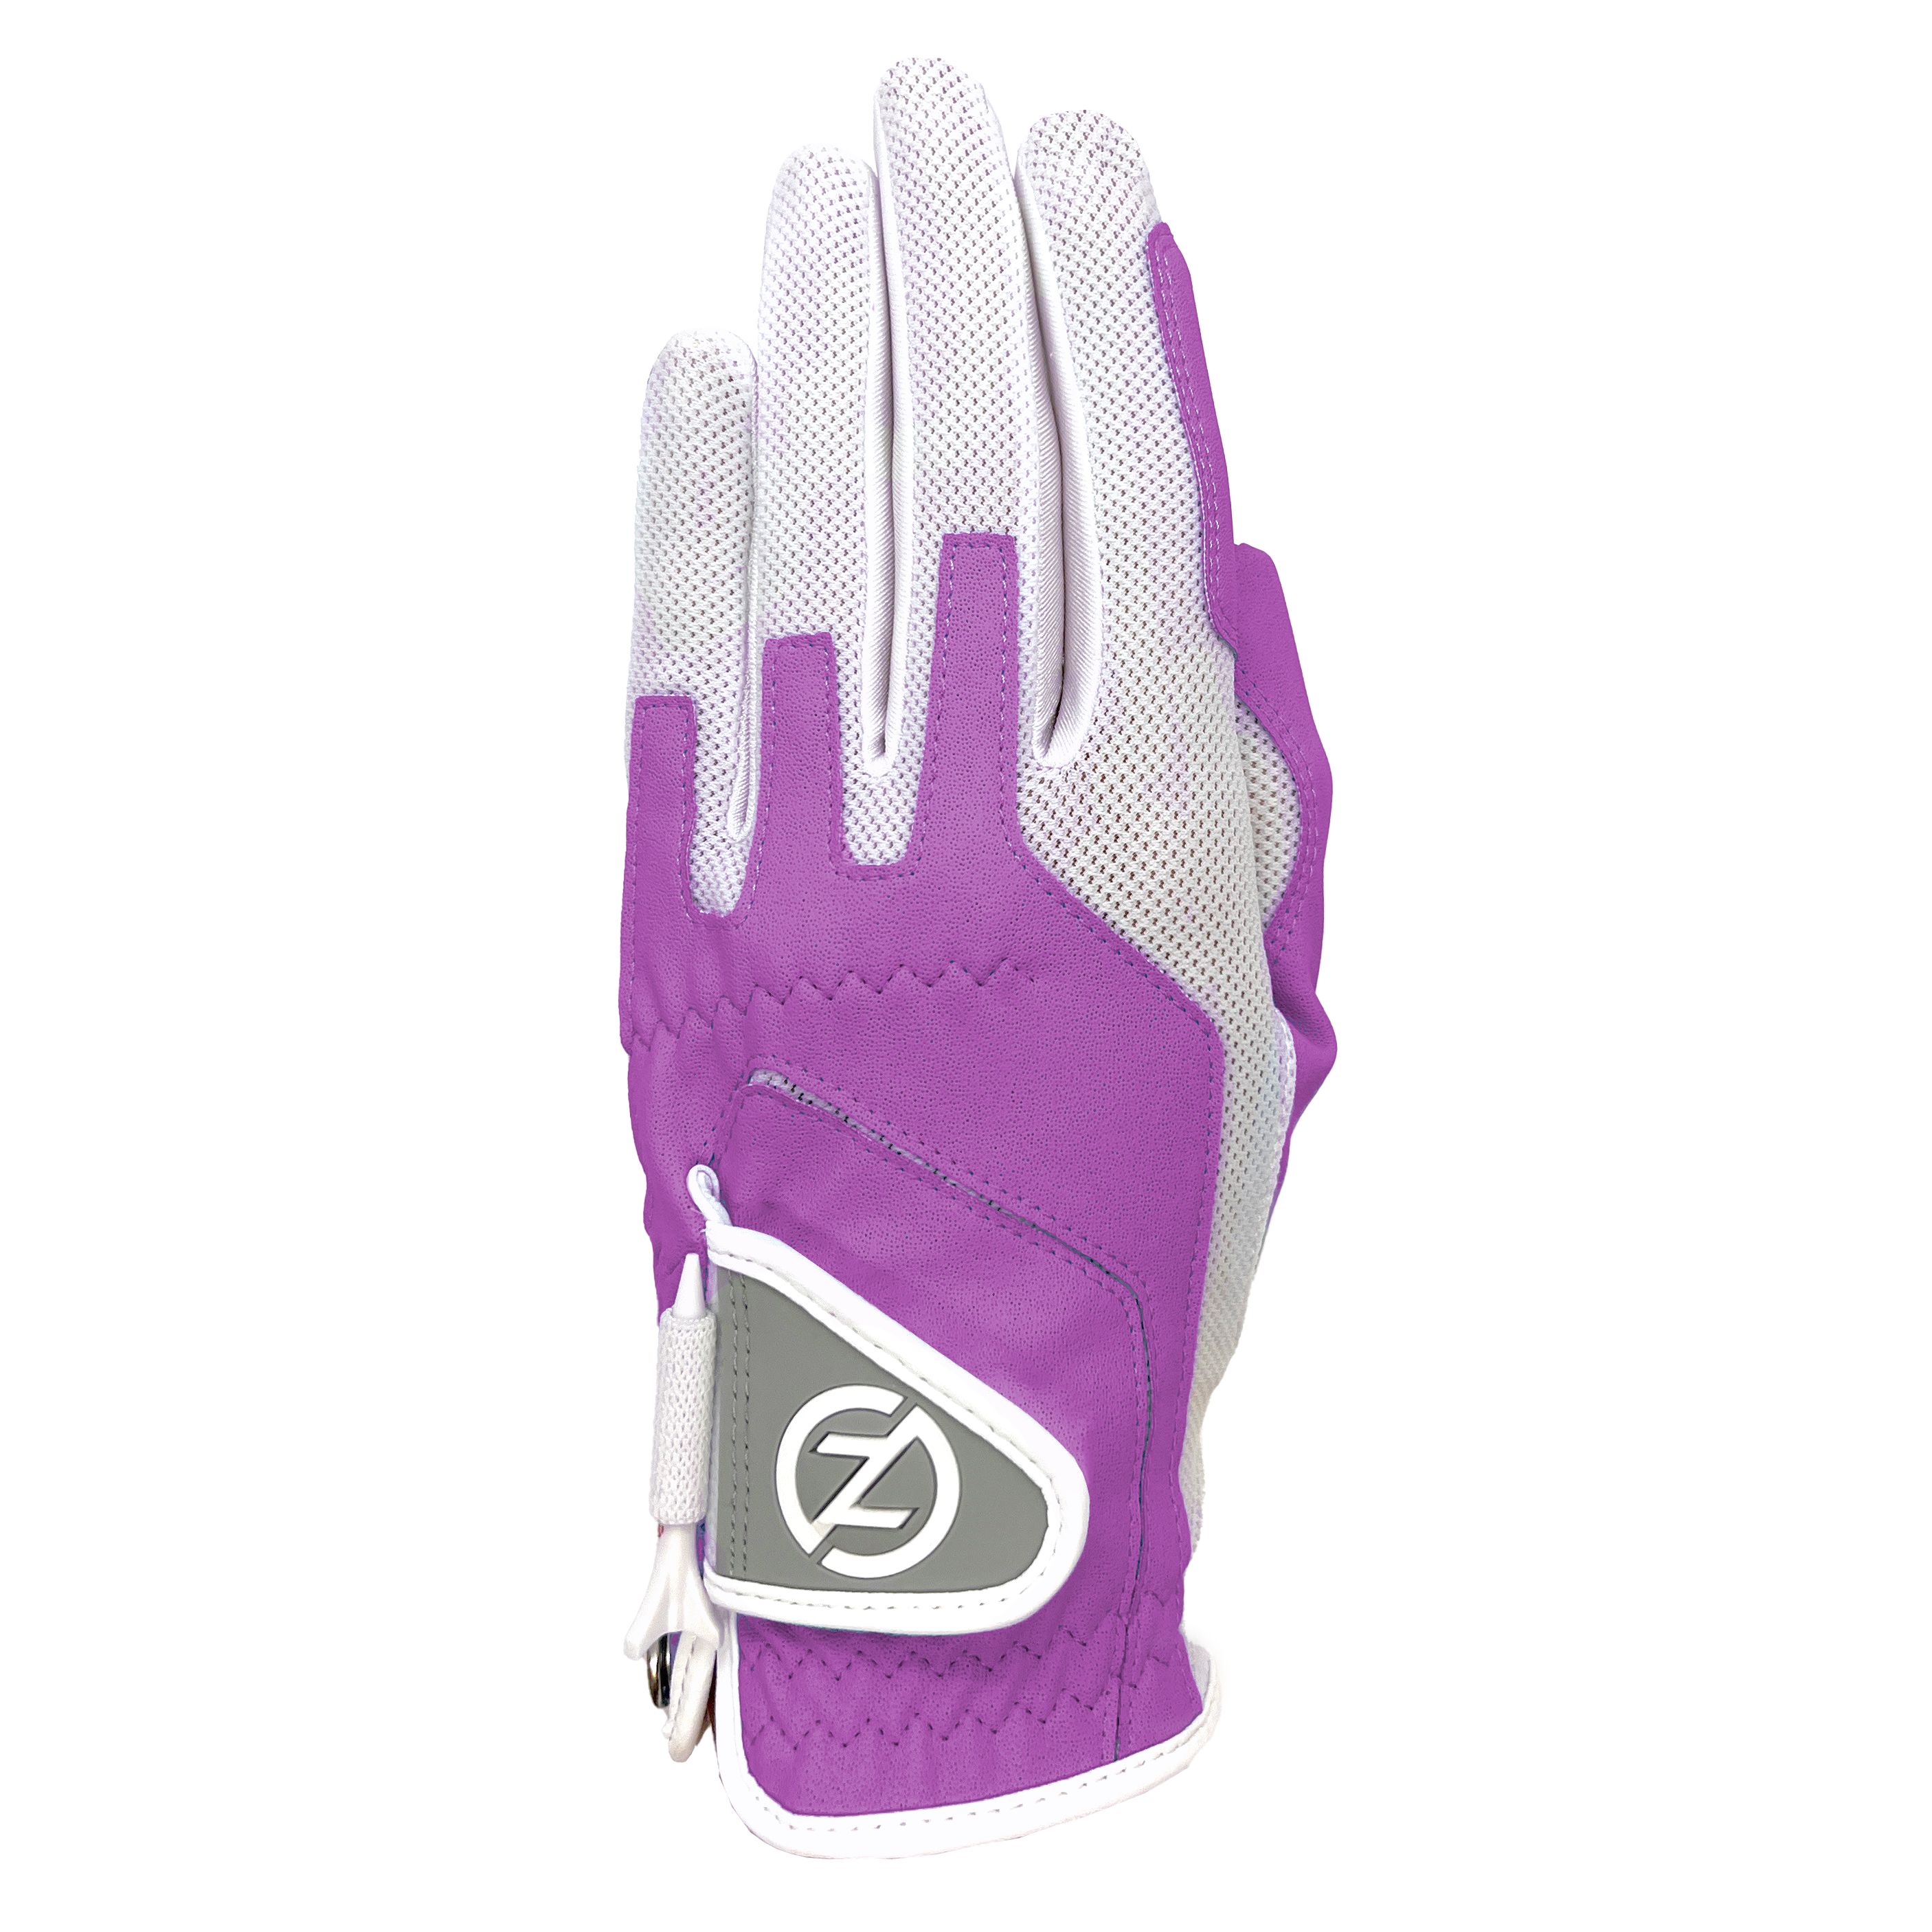 Zero Friction Ladies’ Compression Golf Glove GL30003 – Lavender